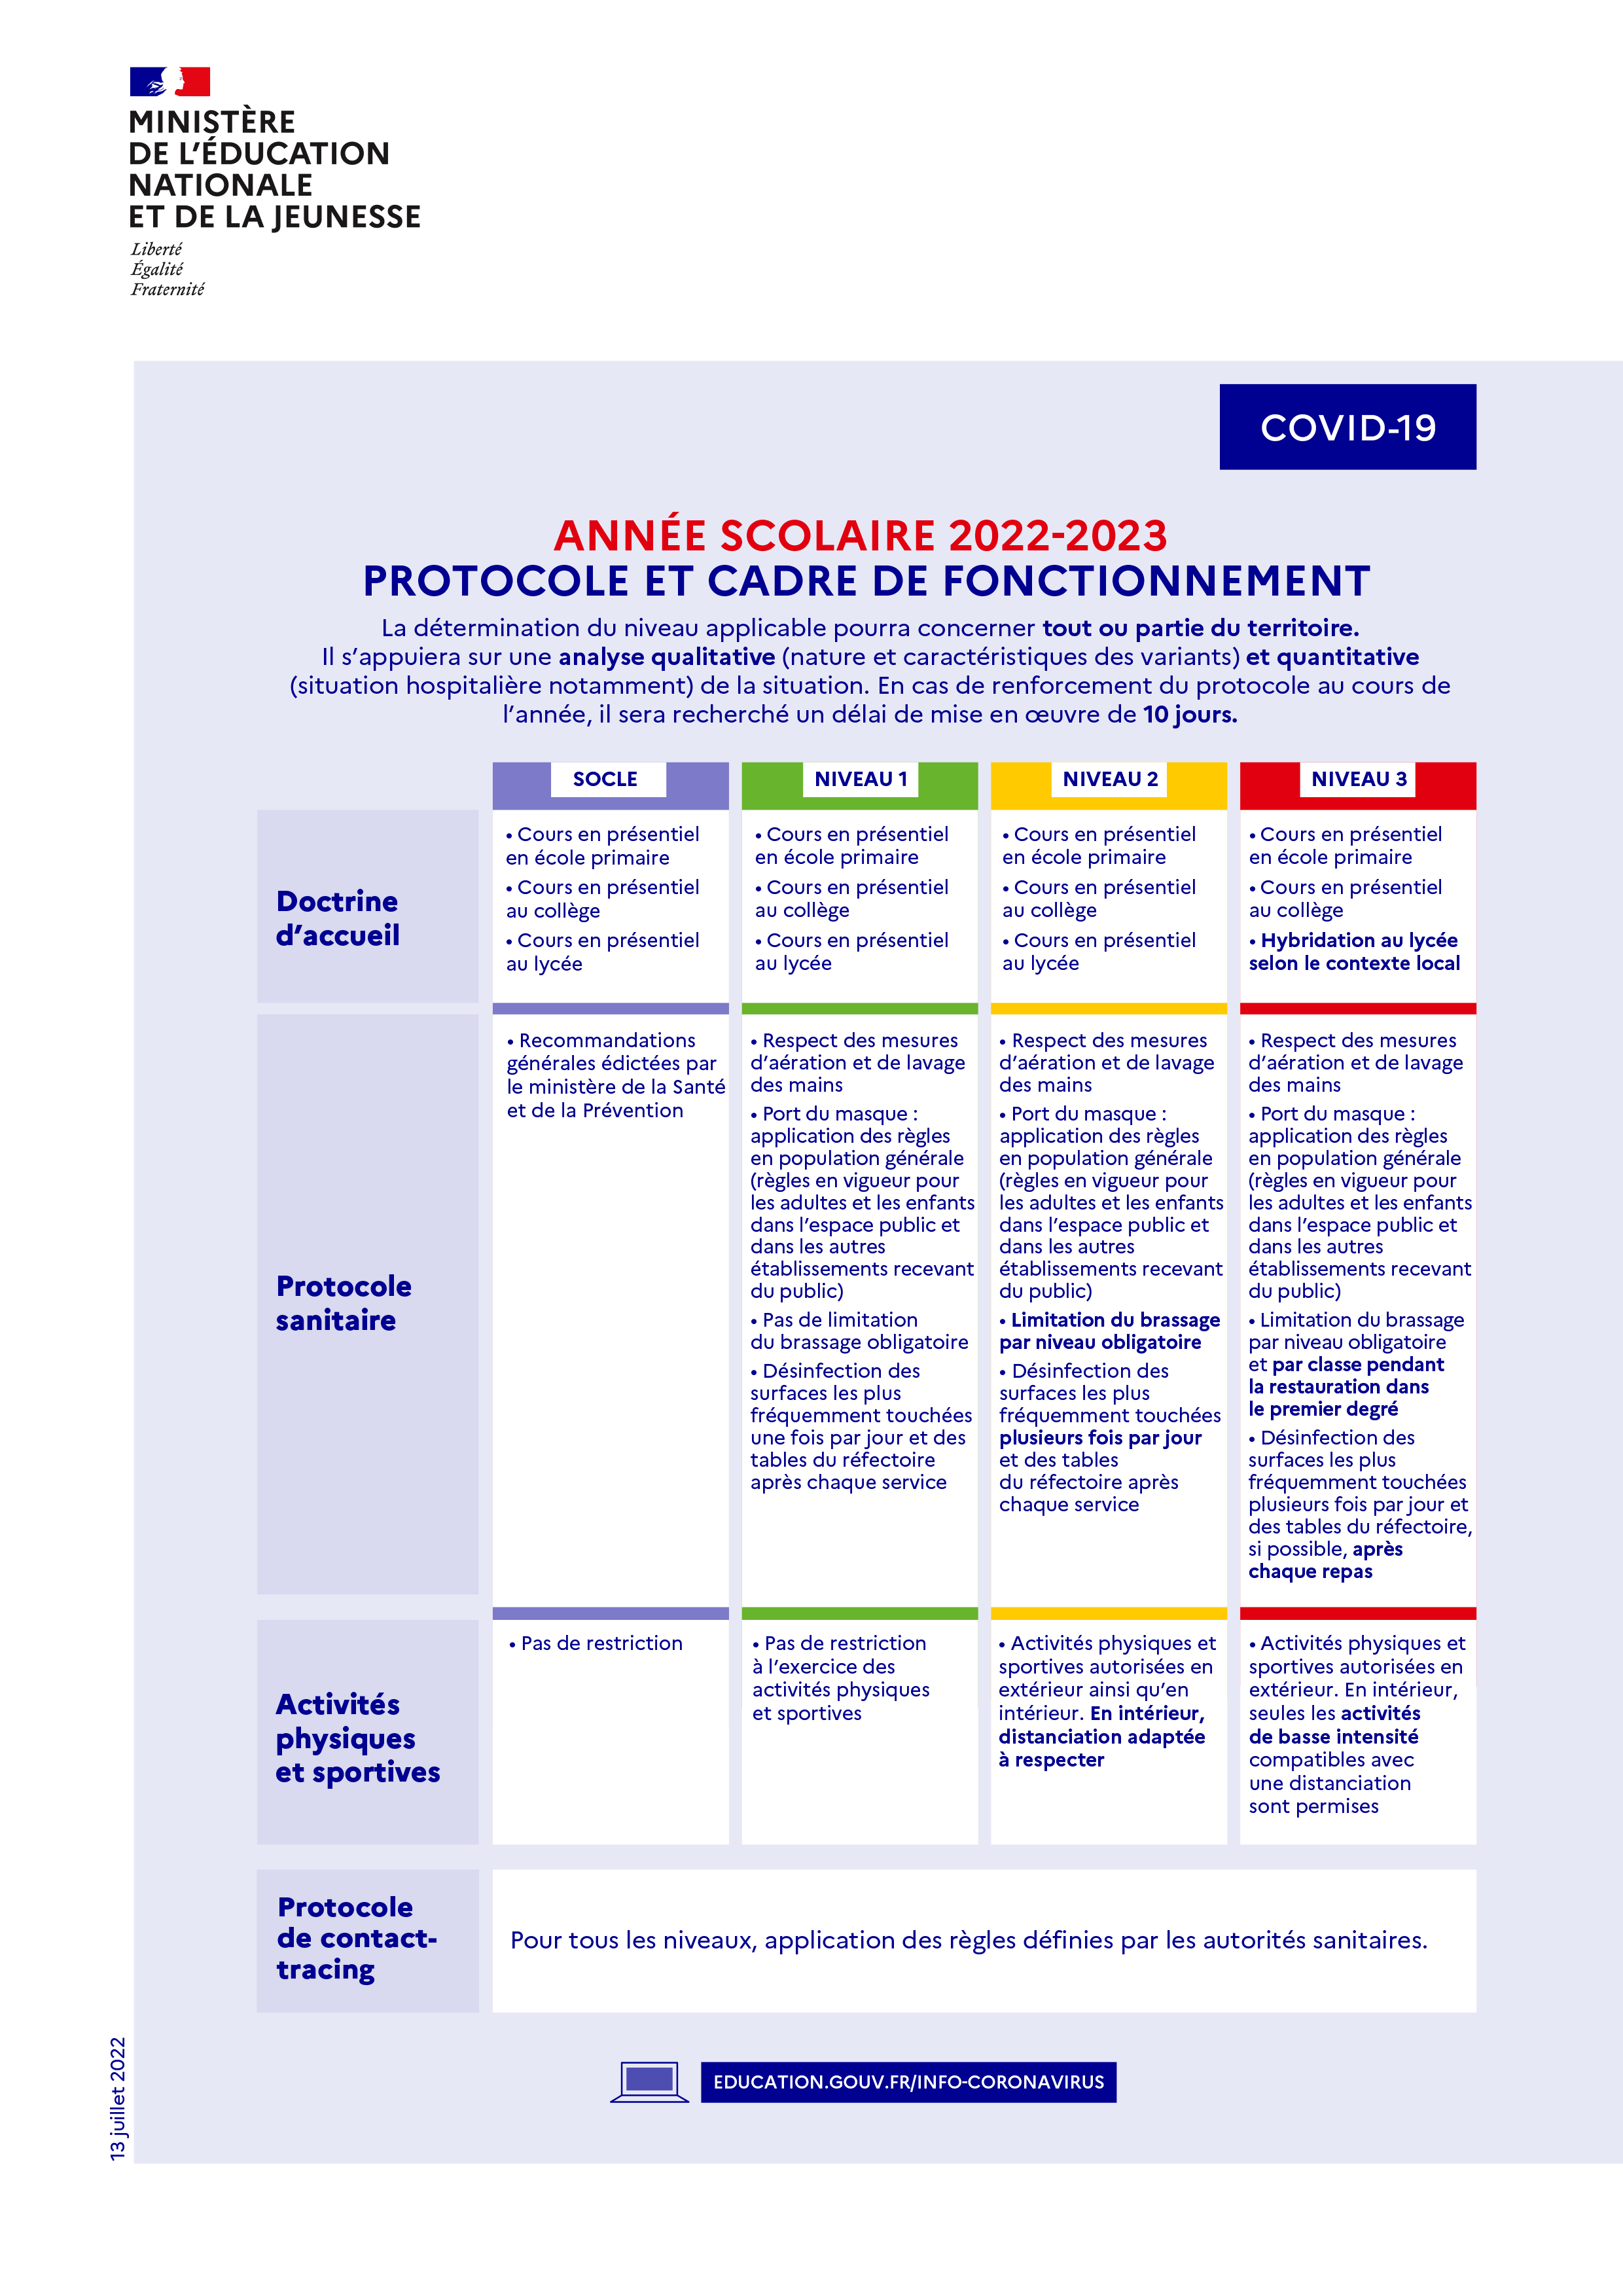 Infographie reprenant le protocole de fonctionnement prévu pour l'année scolaire 2022-23